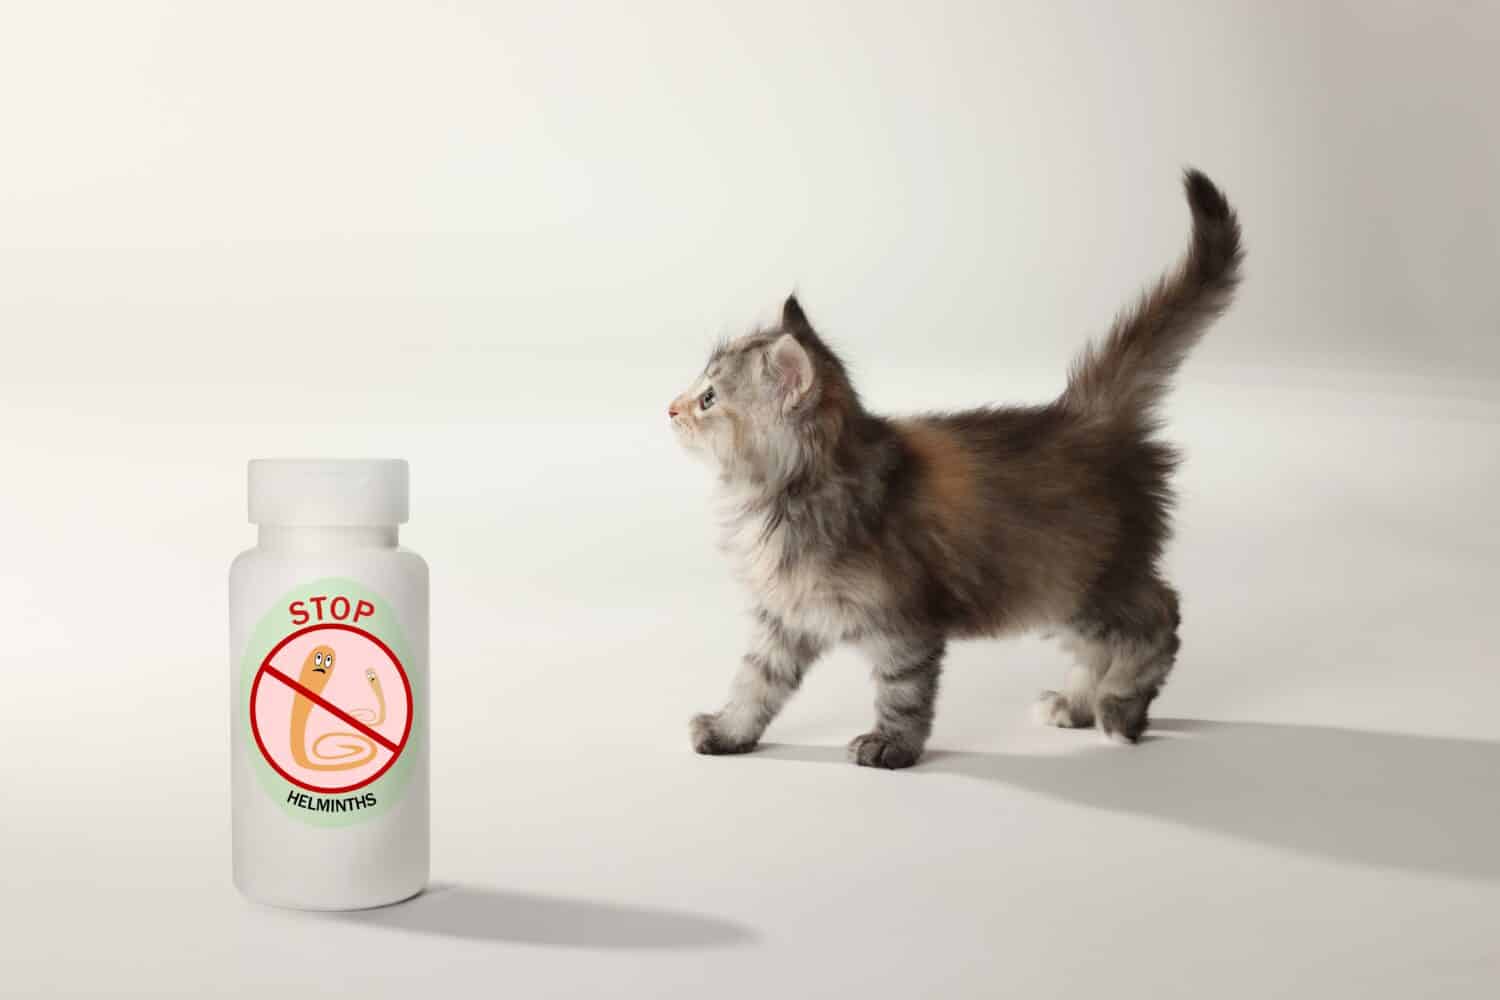 Sverminazione. Gattino peloso e flacone di medicinali con farmaci antielmintici su sfondo bianco